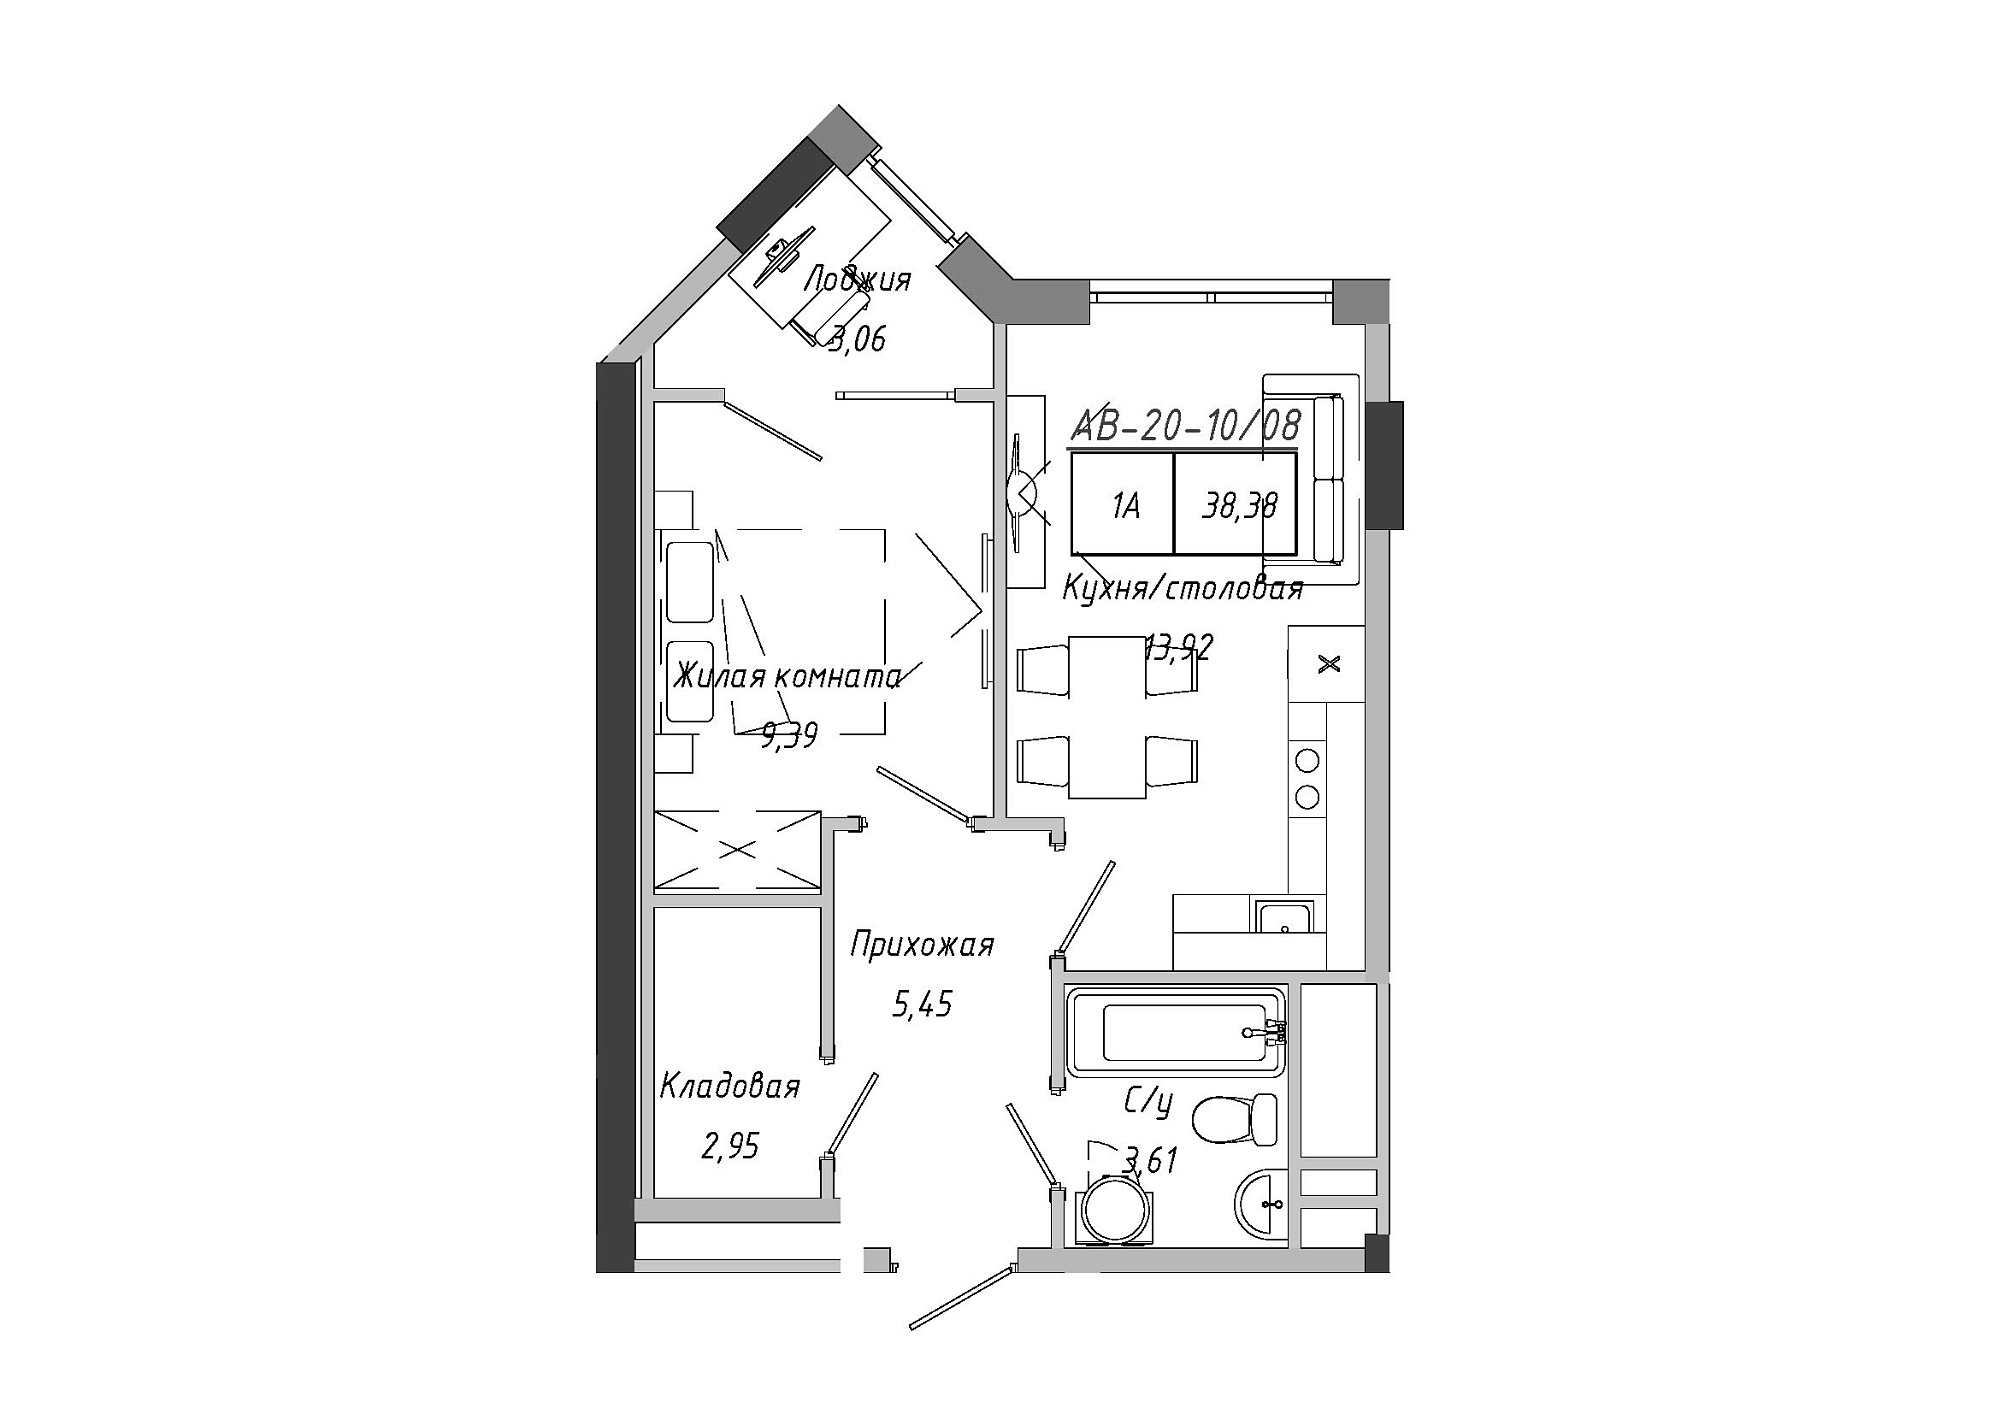 Планировка 1-к квартира площей 38.85м2, AB-20-10/00008.